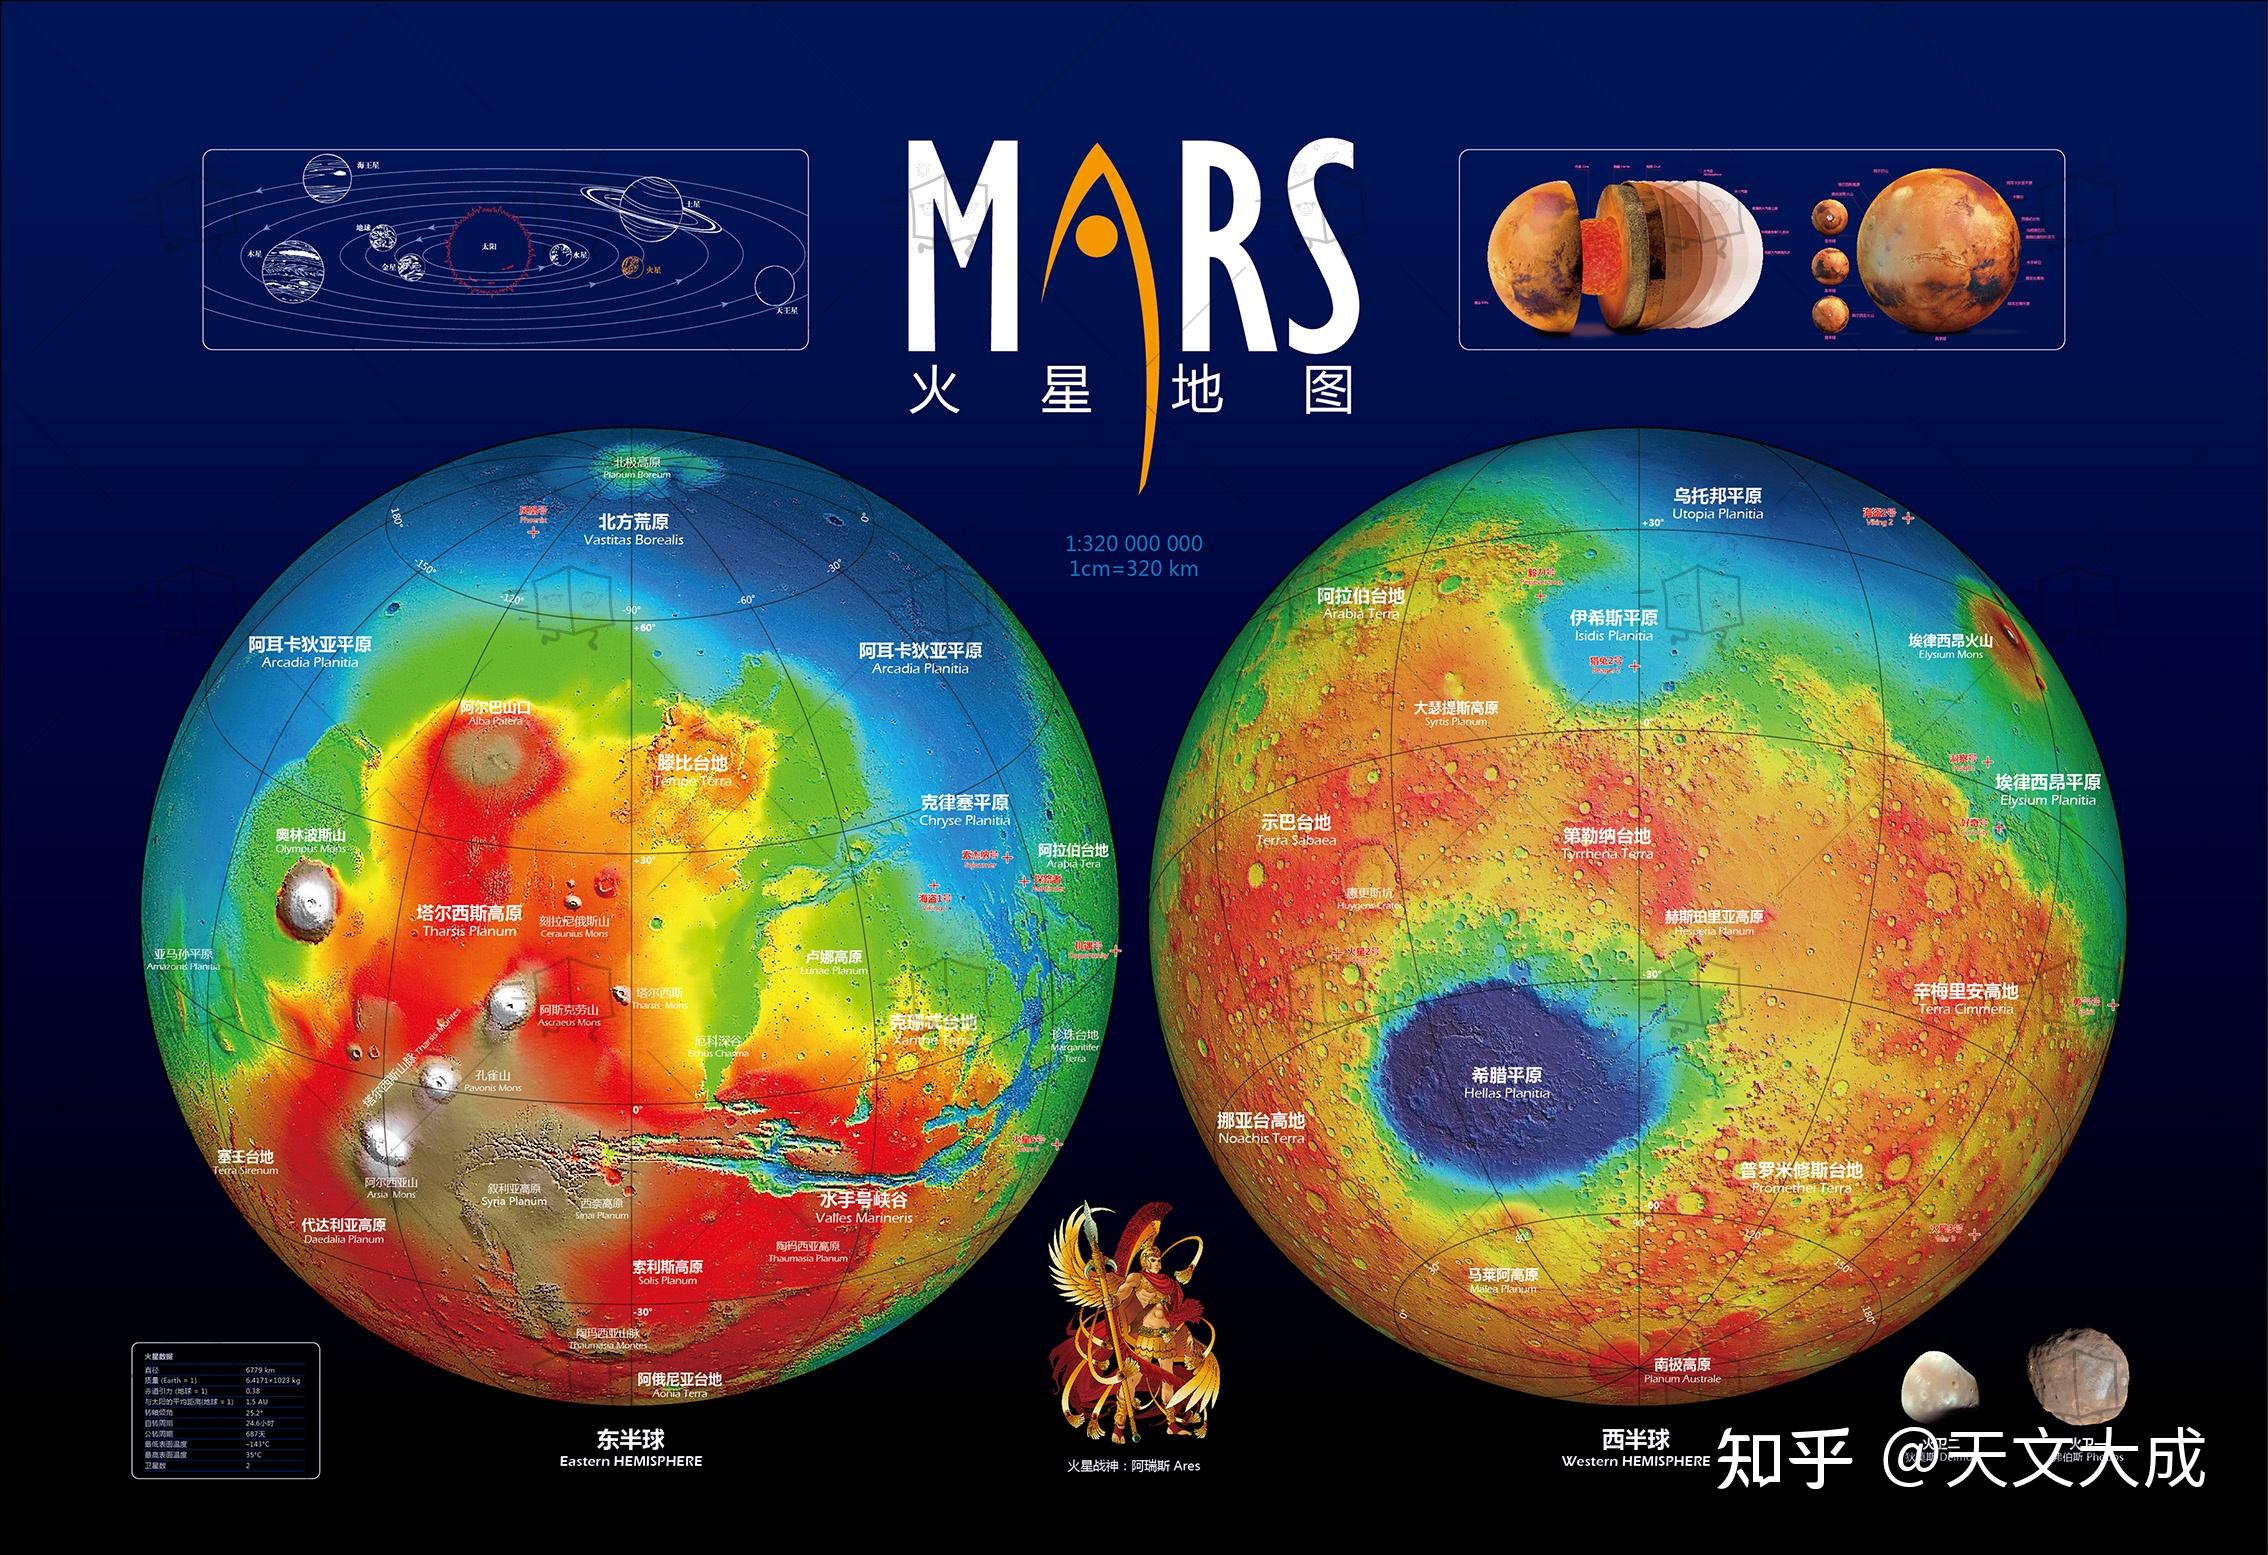 天文海报系列——火星地图 & 火星探索,矢量绘制.只关心天上的事